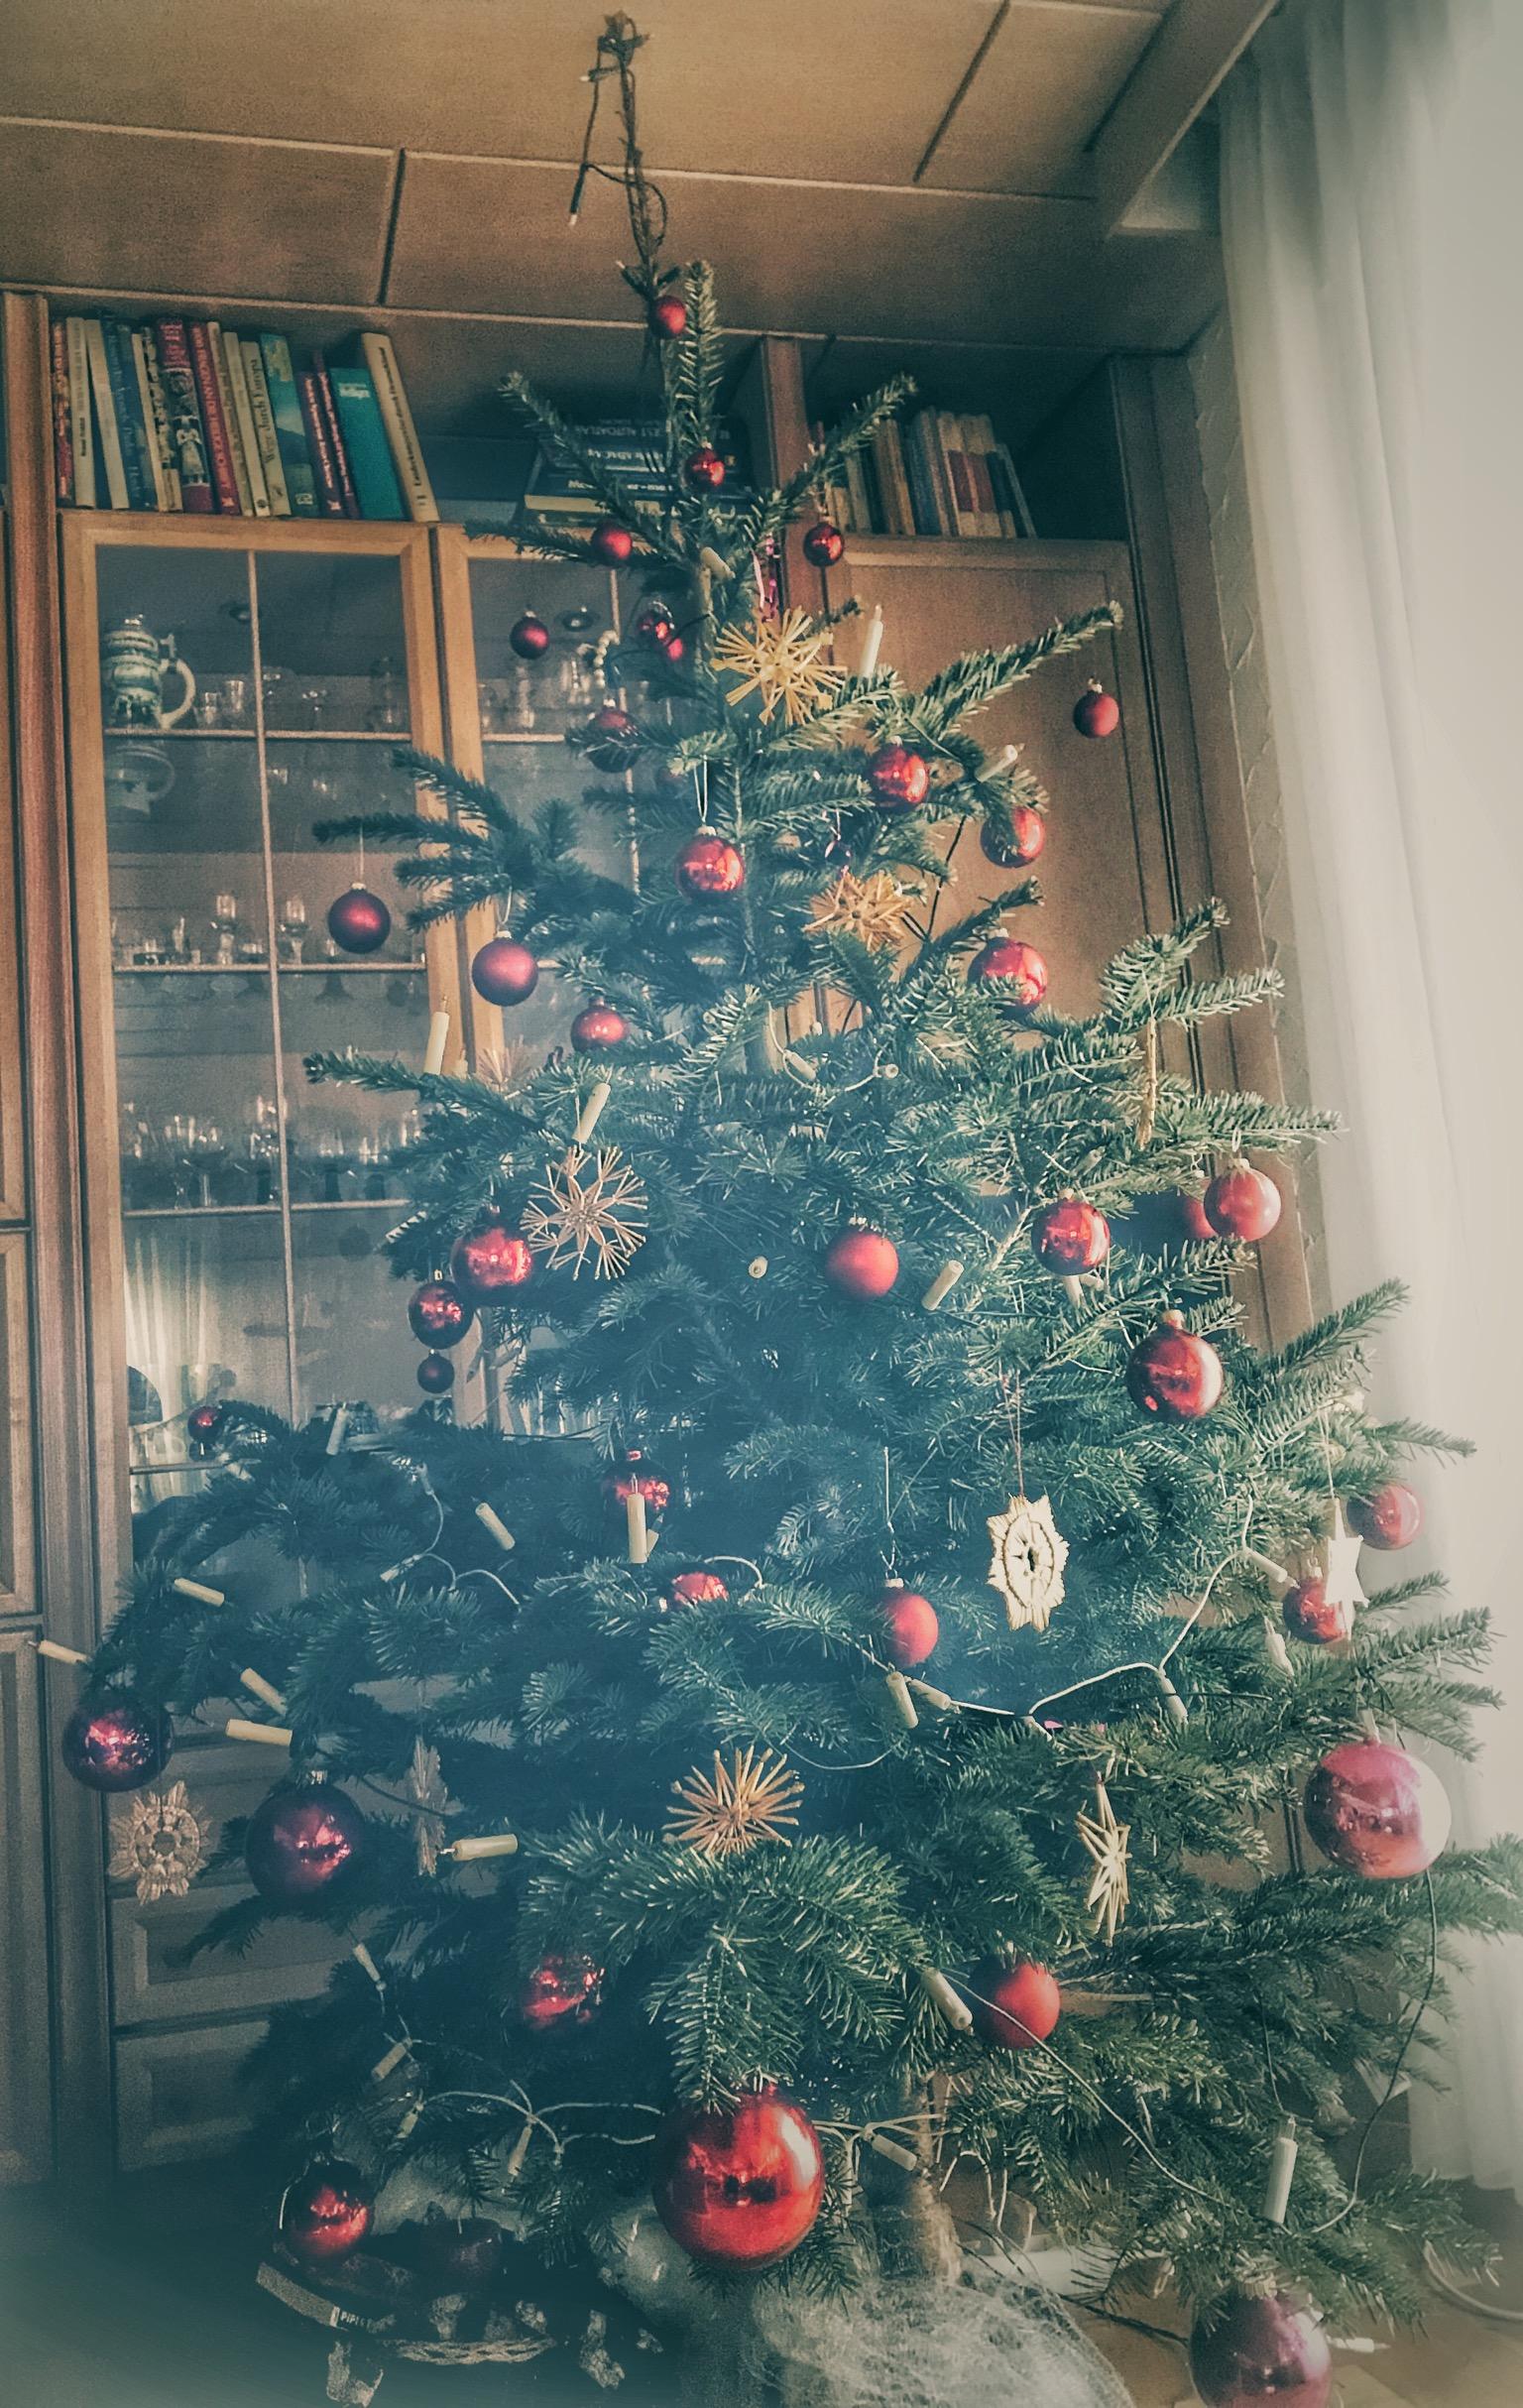 Unser klassischer Weihnachtsbaum!
#Weihnachtsbaum